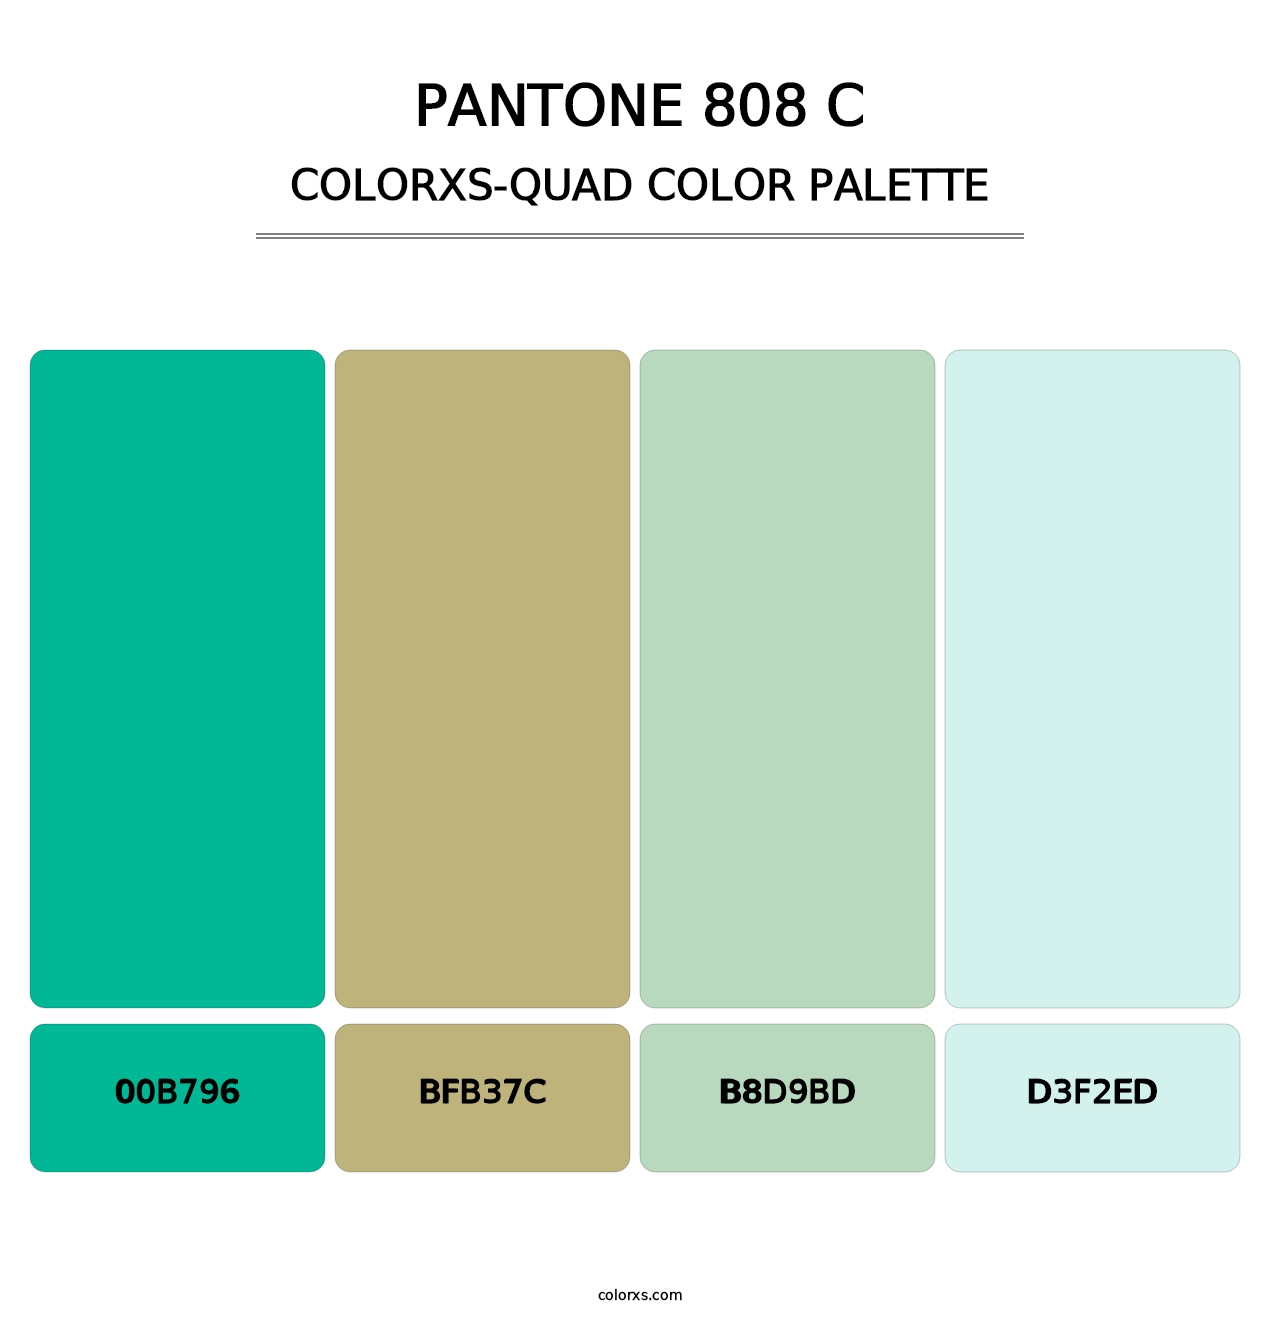 PANTONE 808 C - Colorxs Quad Palette